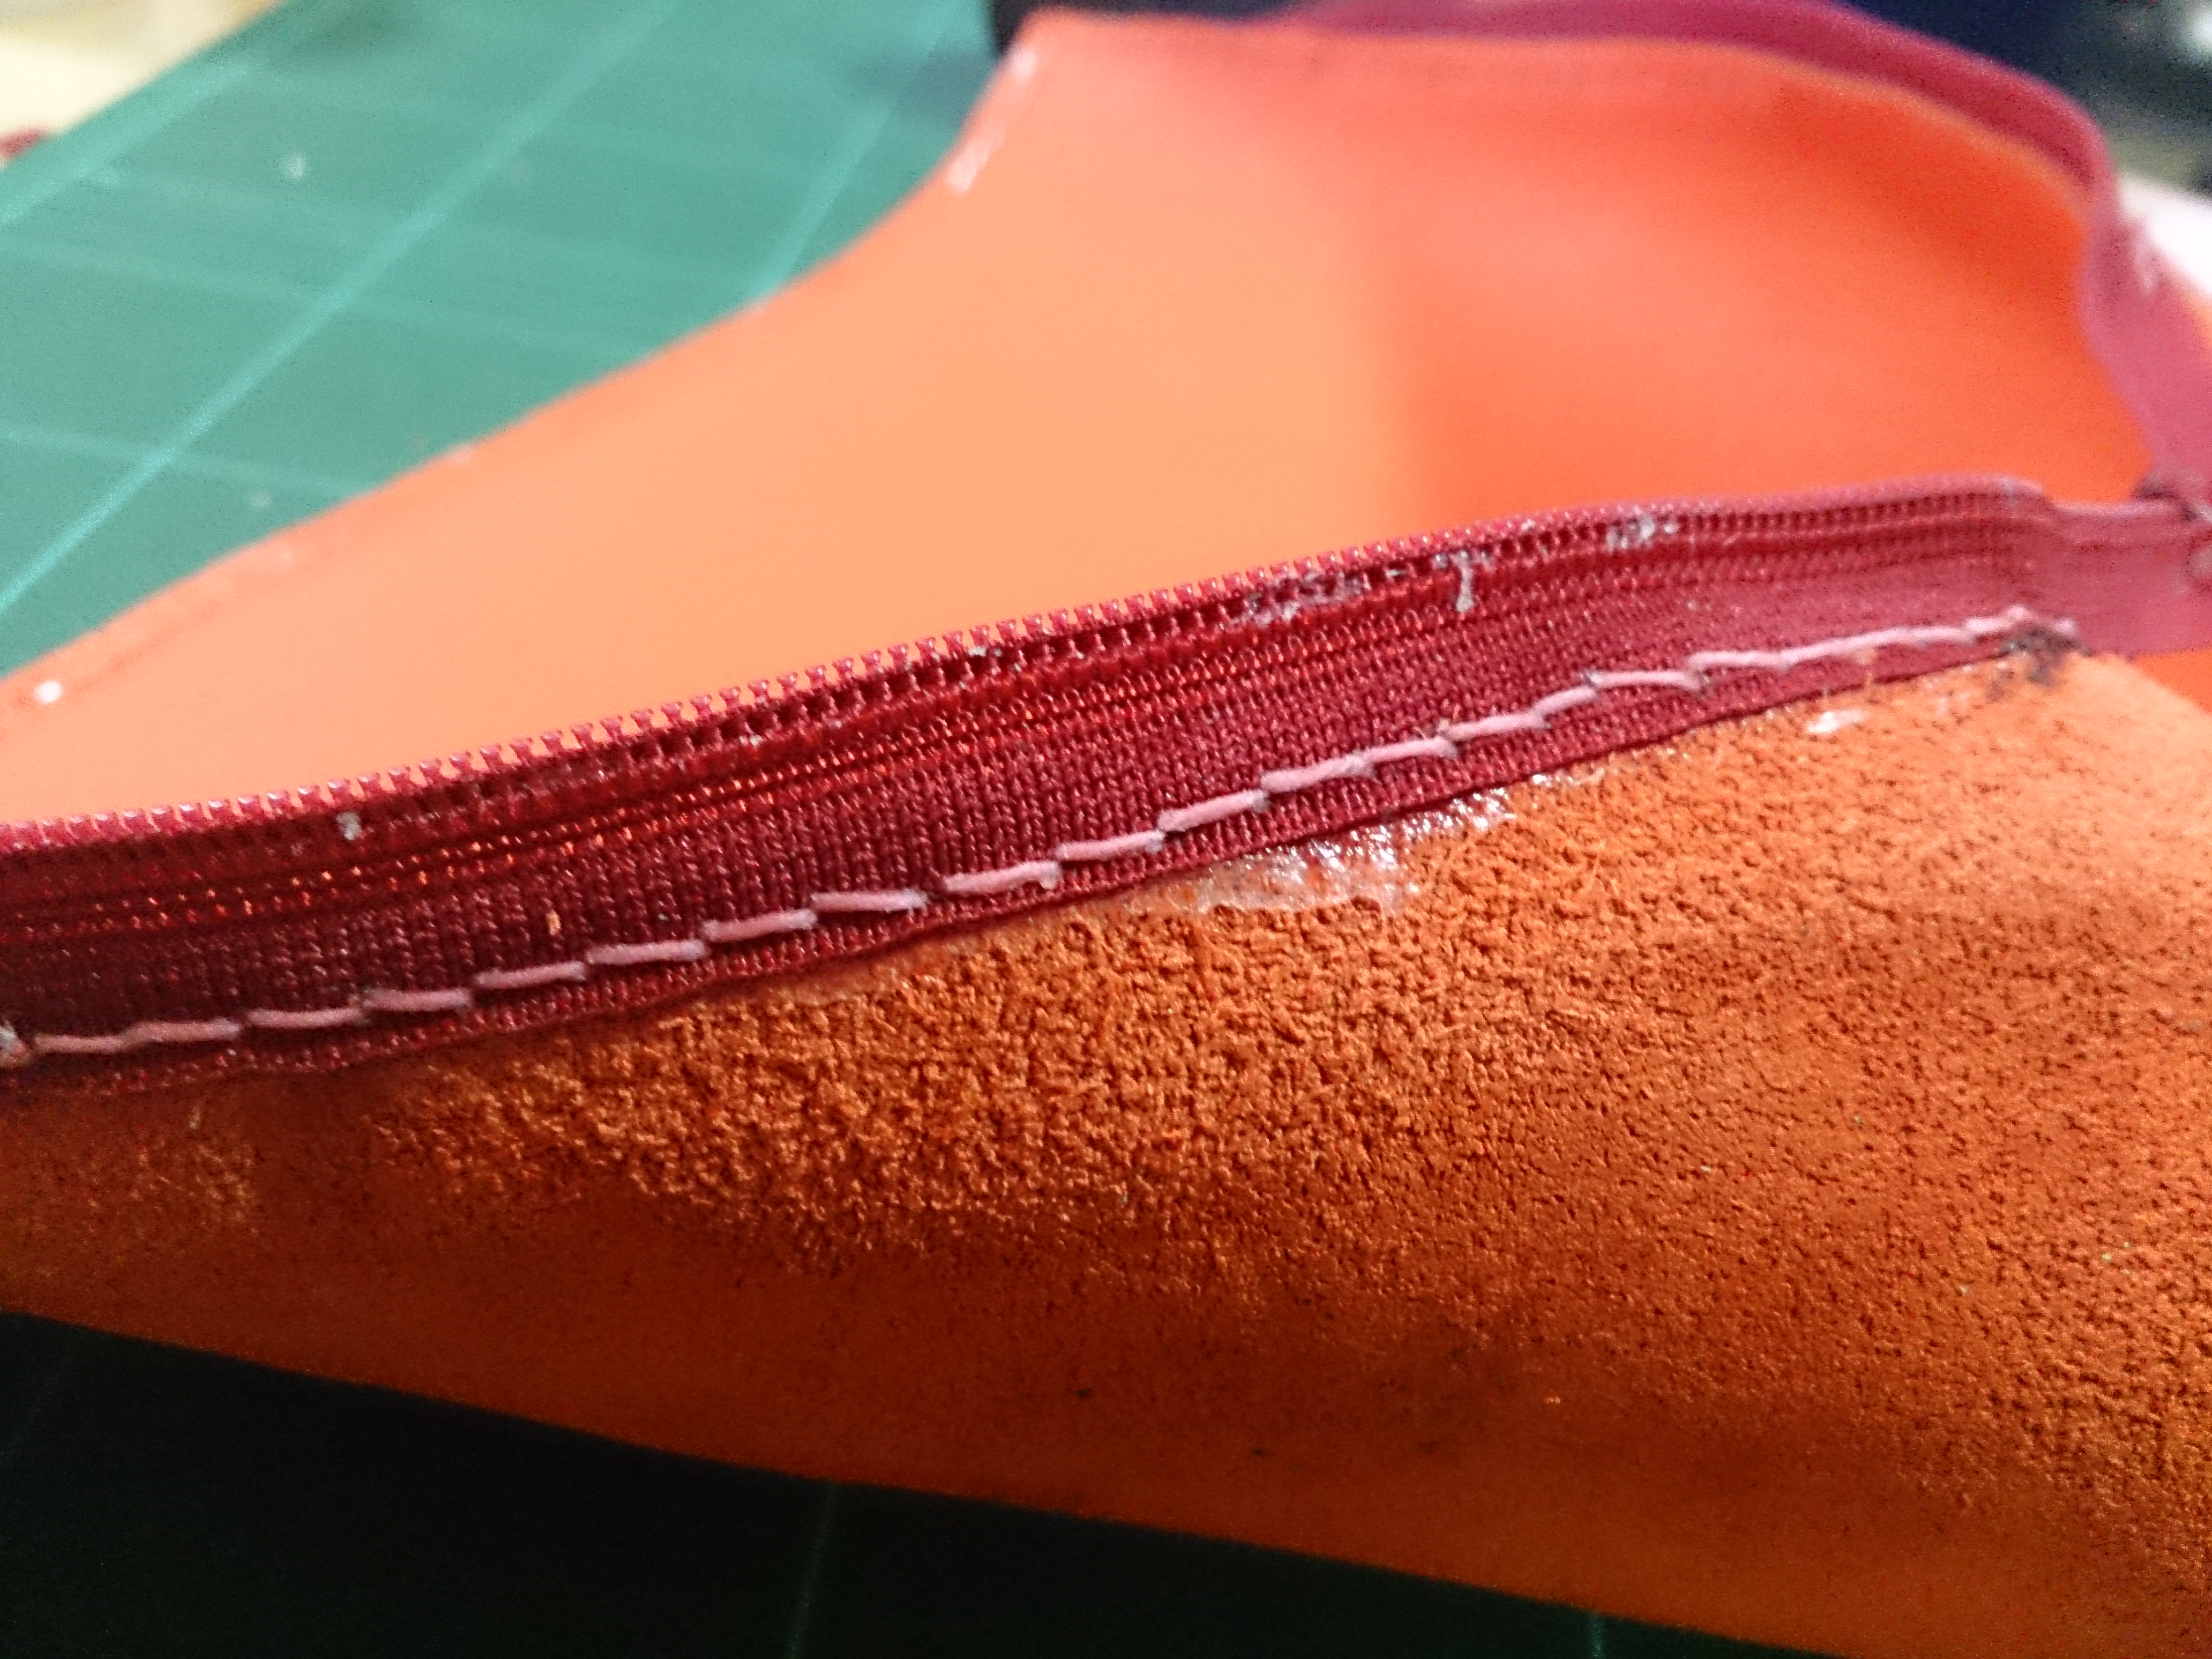 革細工で袋縫いのポーチを試作 初心者のレザークラフト